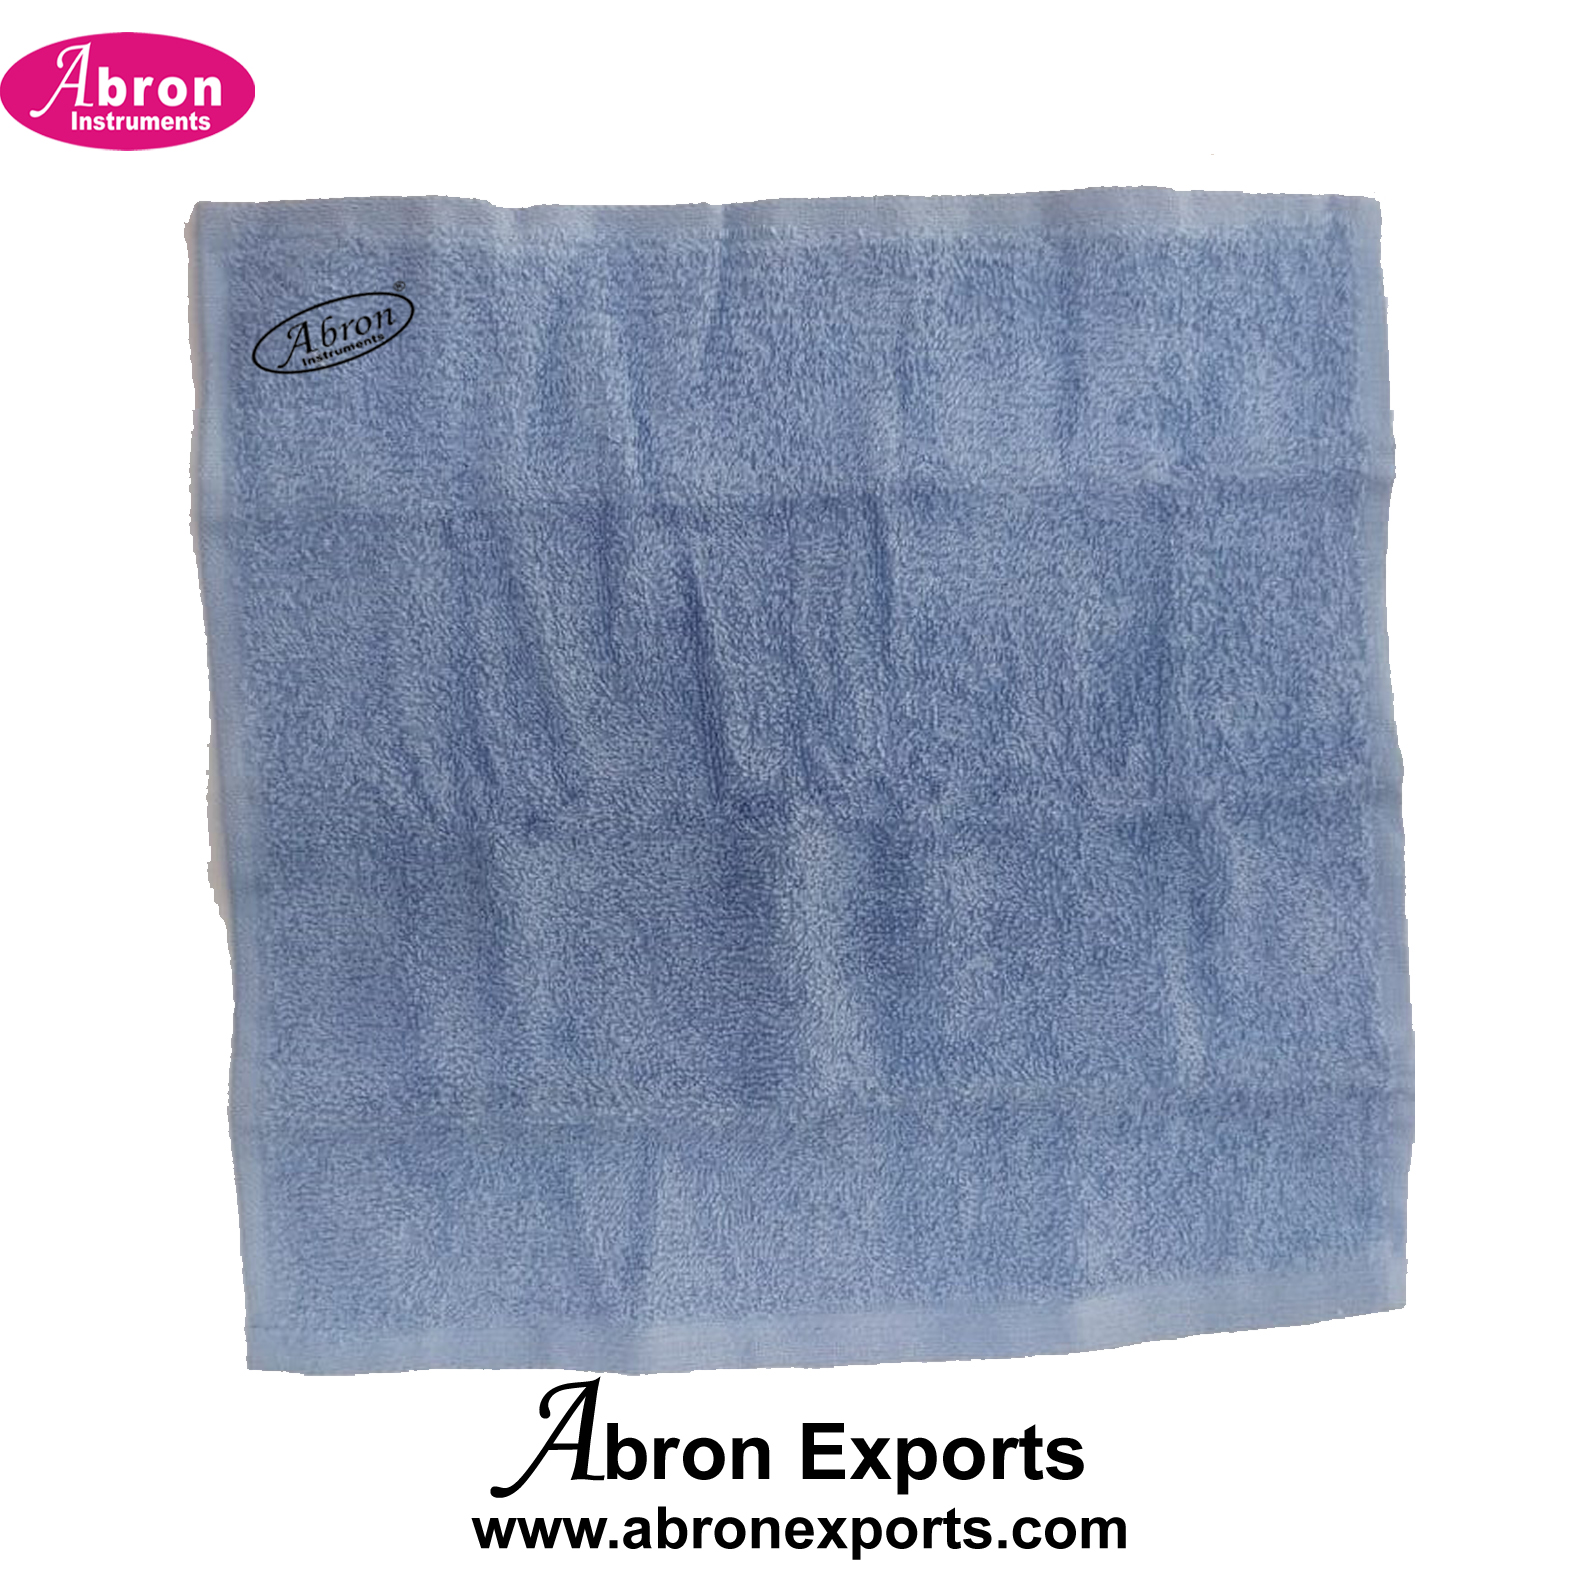 Towel 30-30cm Cotton Assorted Colour Cotton Superior Pack of 100pc Abron ABM-3501T1M 